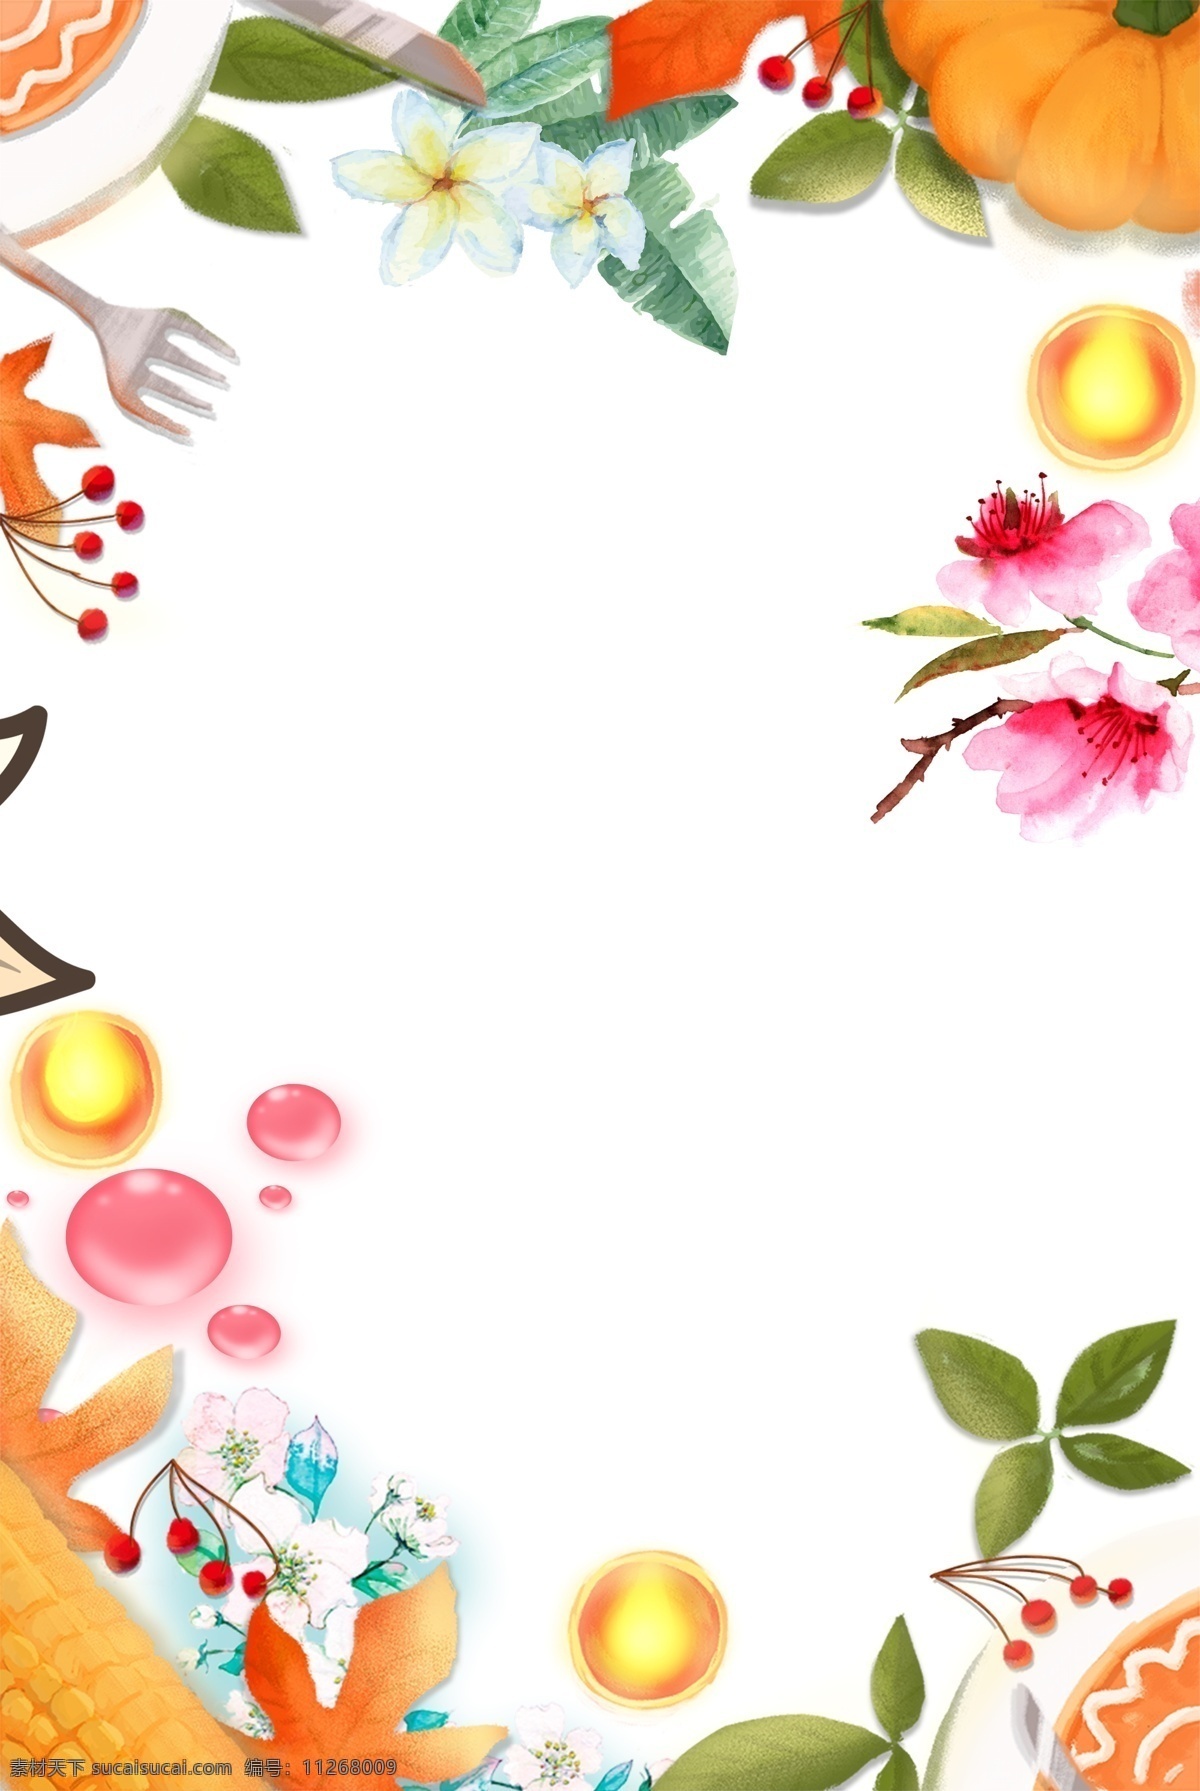 简约 水果 花卉 背景 三月 果蔬 食物 番石榴 盘子 桌布 季节水果